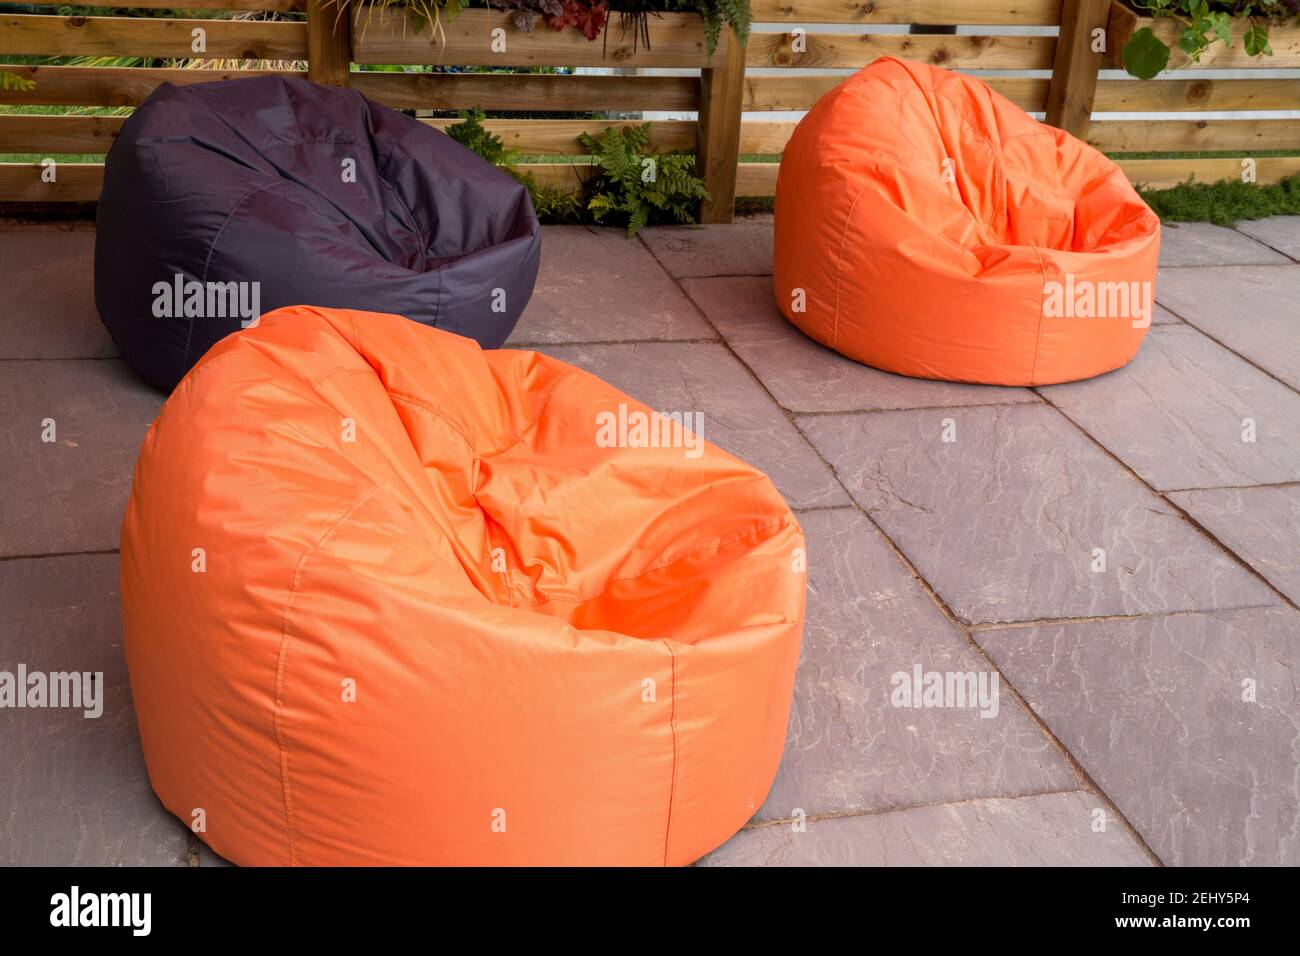 Große orange und schwarz Sitzsack Stühle auf einem Stein Gepflasterte Terrasse England GB Großbritannien Stockfoto